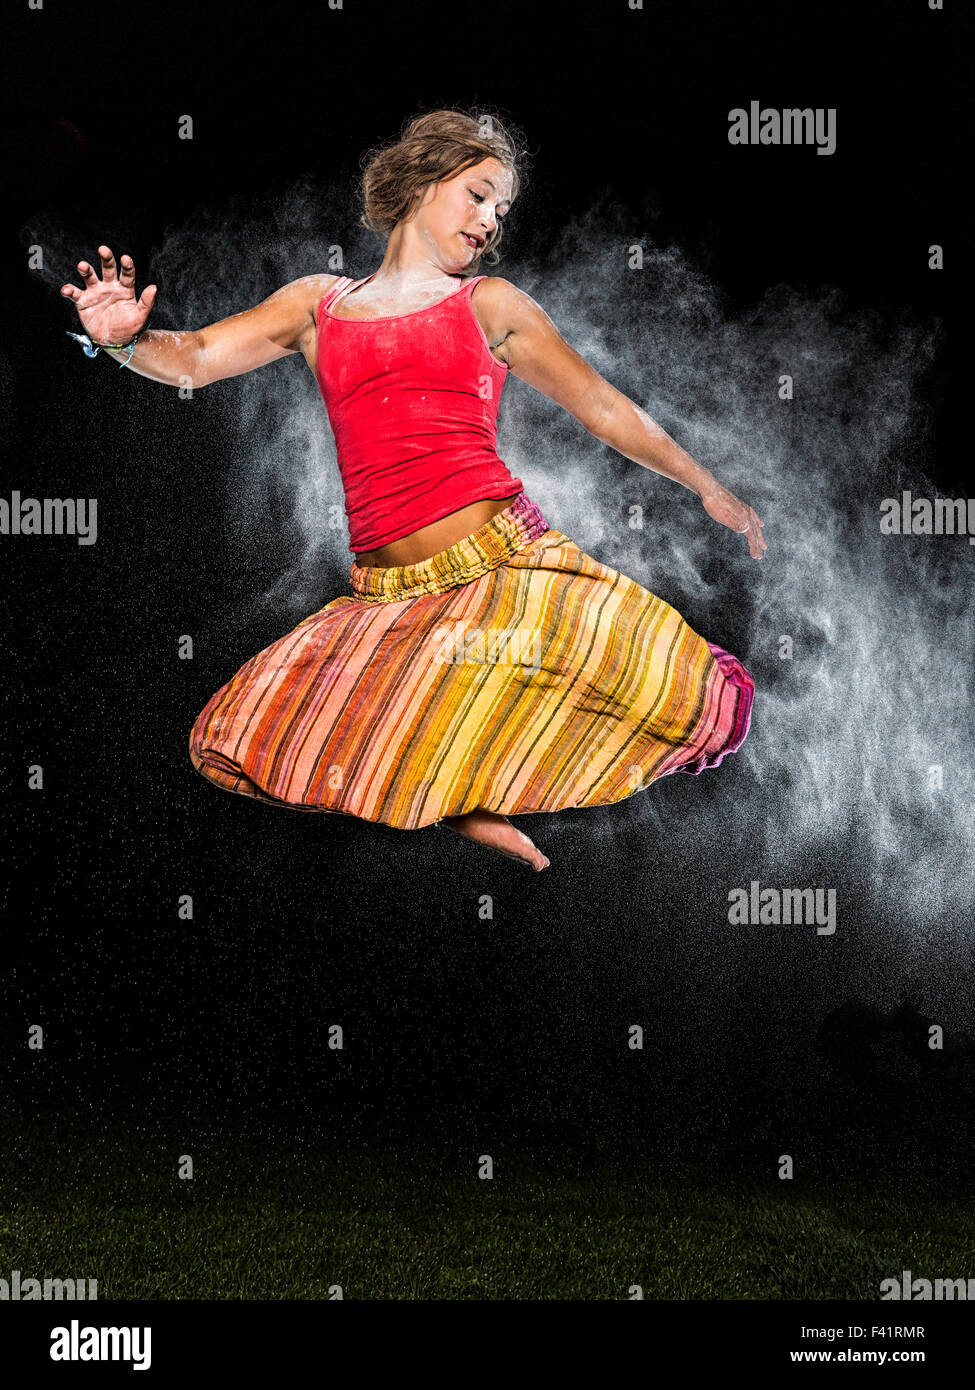 Junge Frau, 19 Jahre alt, springen, in der Luft mit weißer Staub, gegen den Abendhimmel Stockfoto